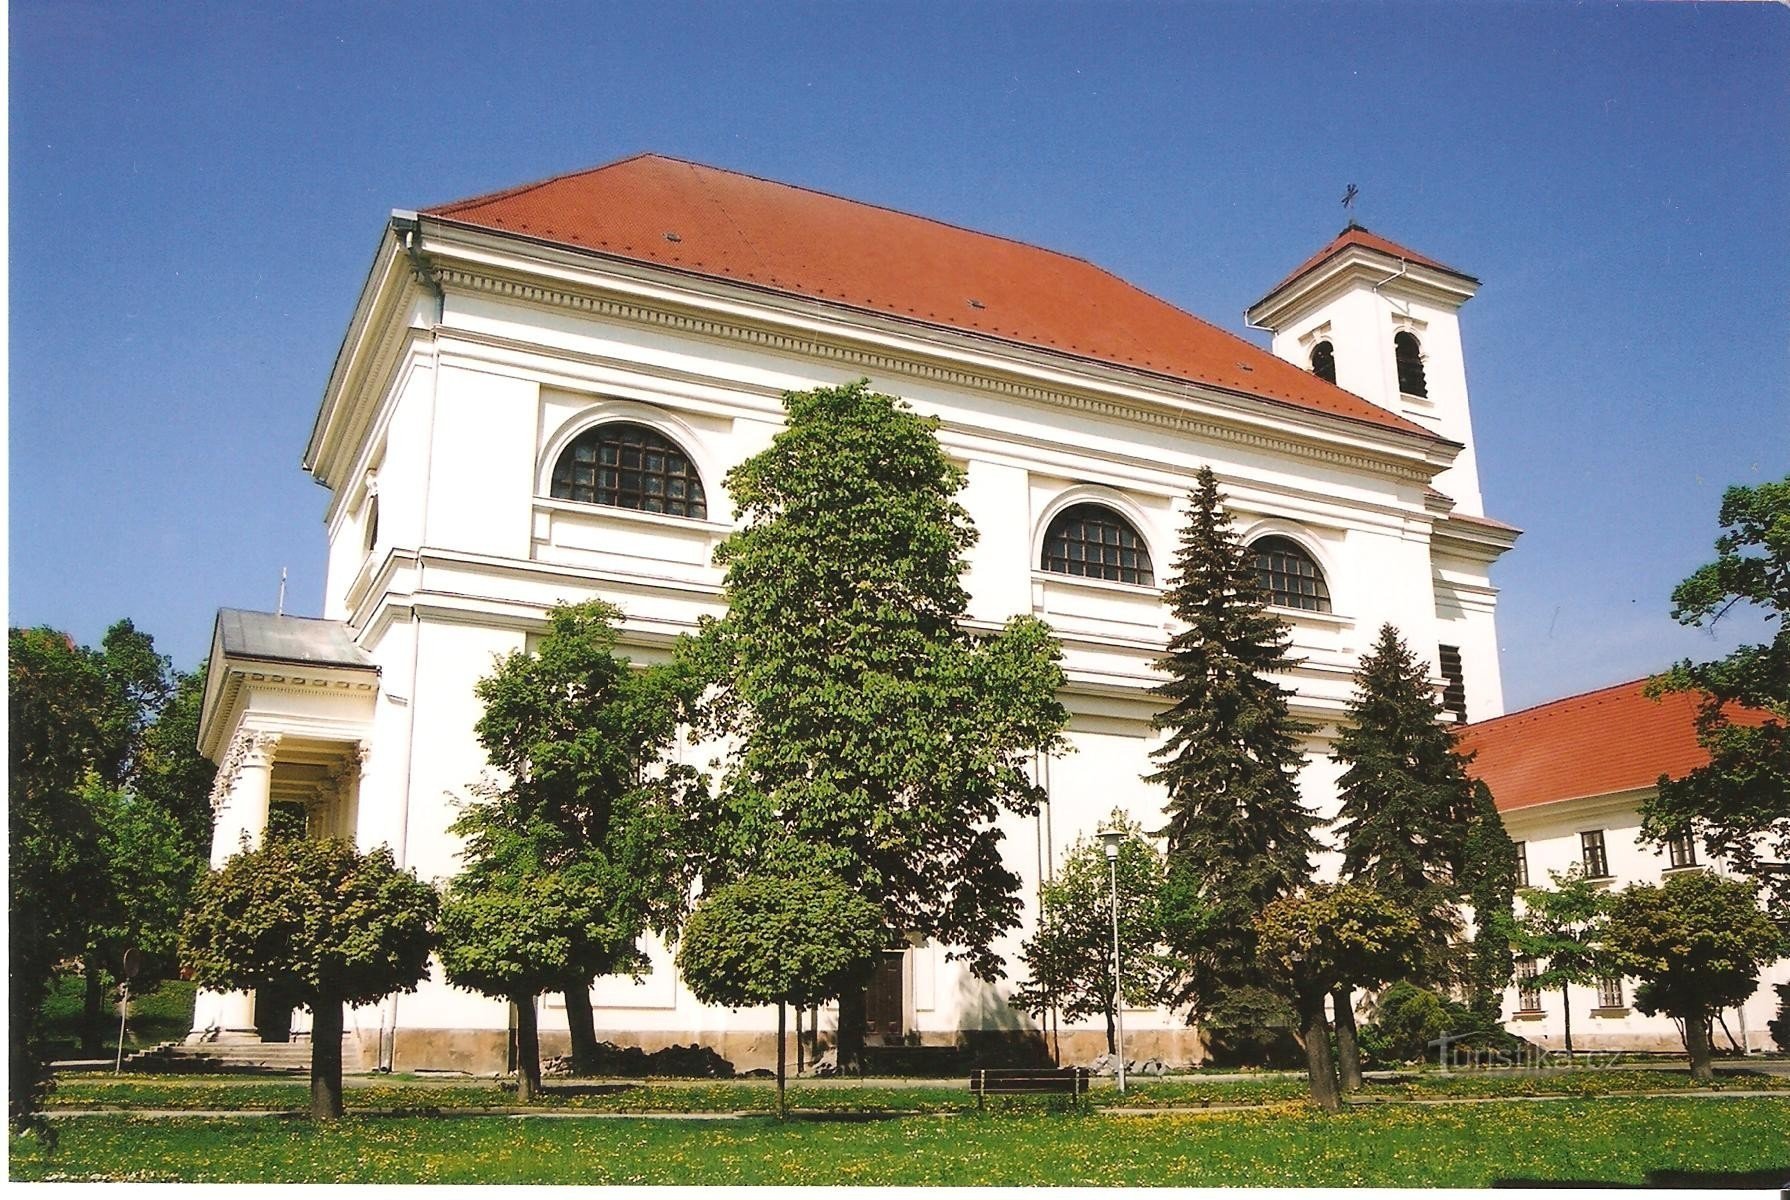 Slavkov - igreja